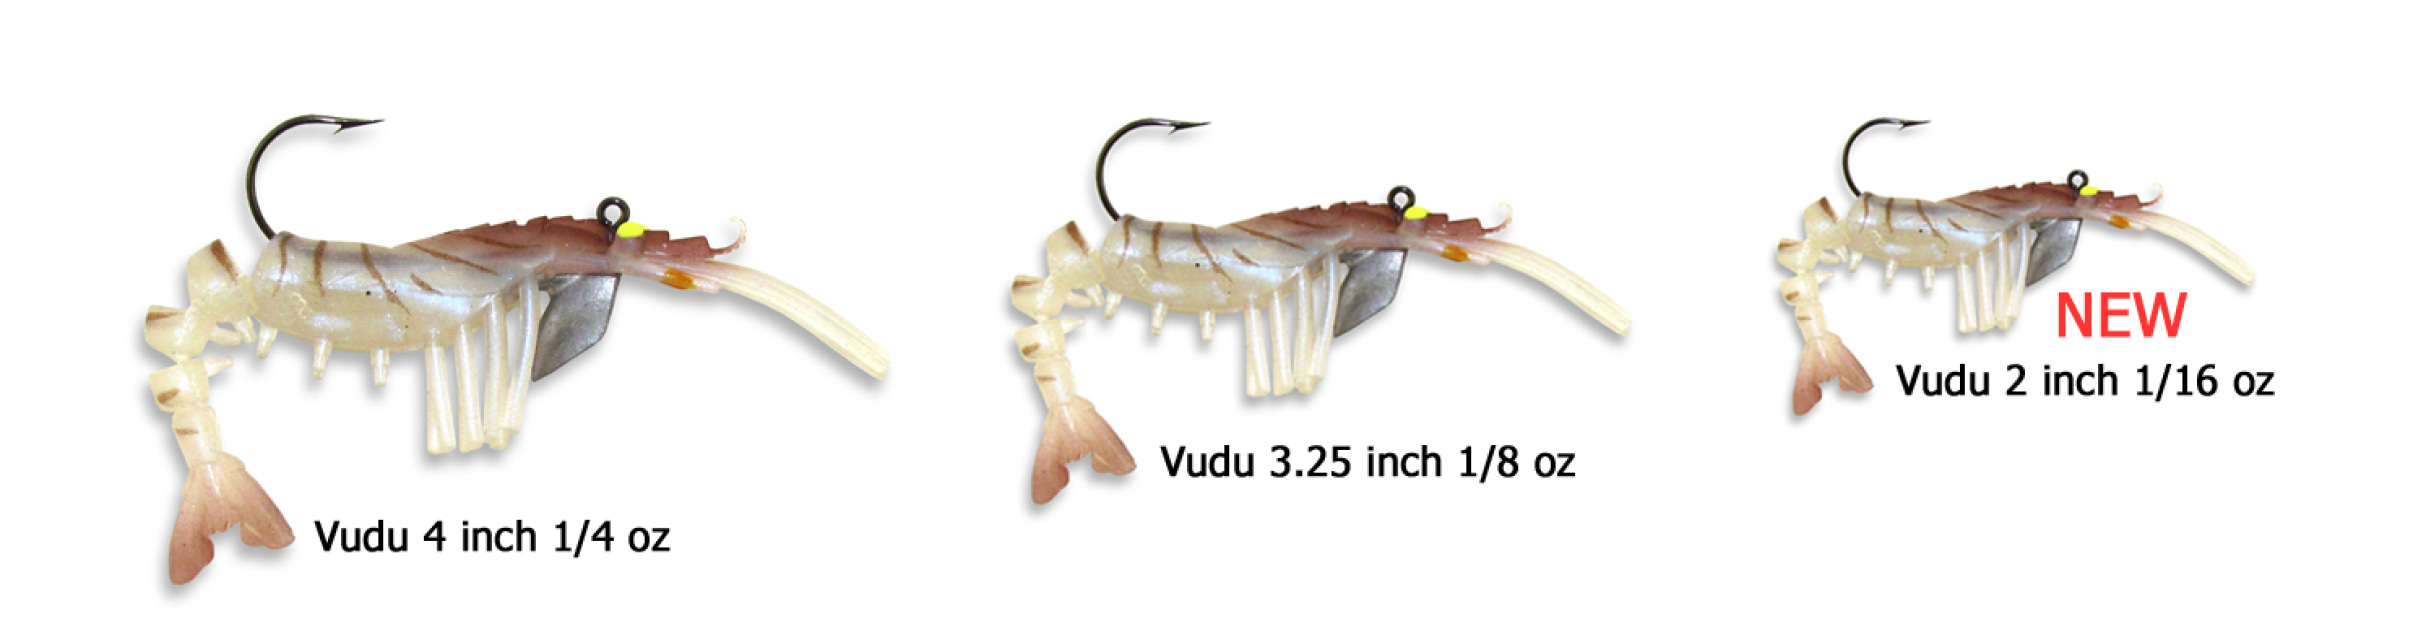 35 Vudu Shrimp Black Magic 2 inch 1/16 oz (2pk)